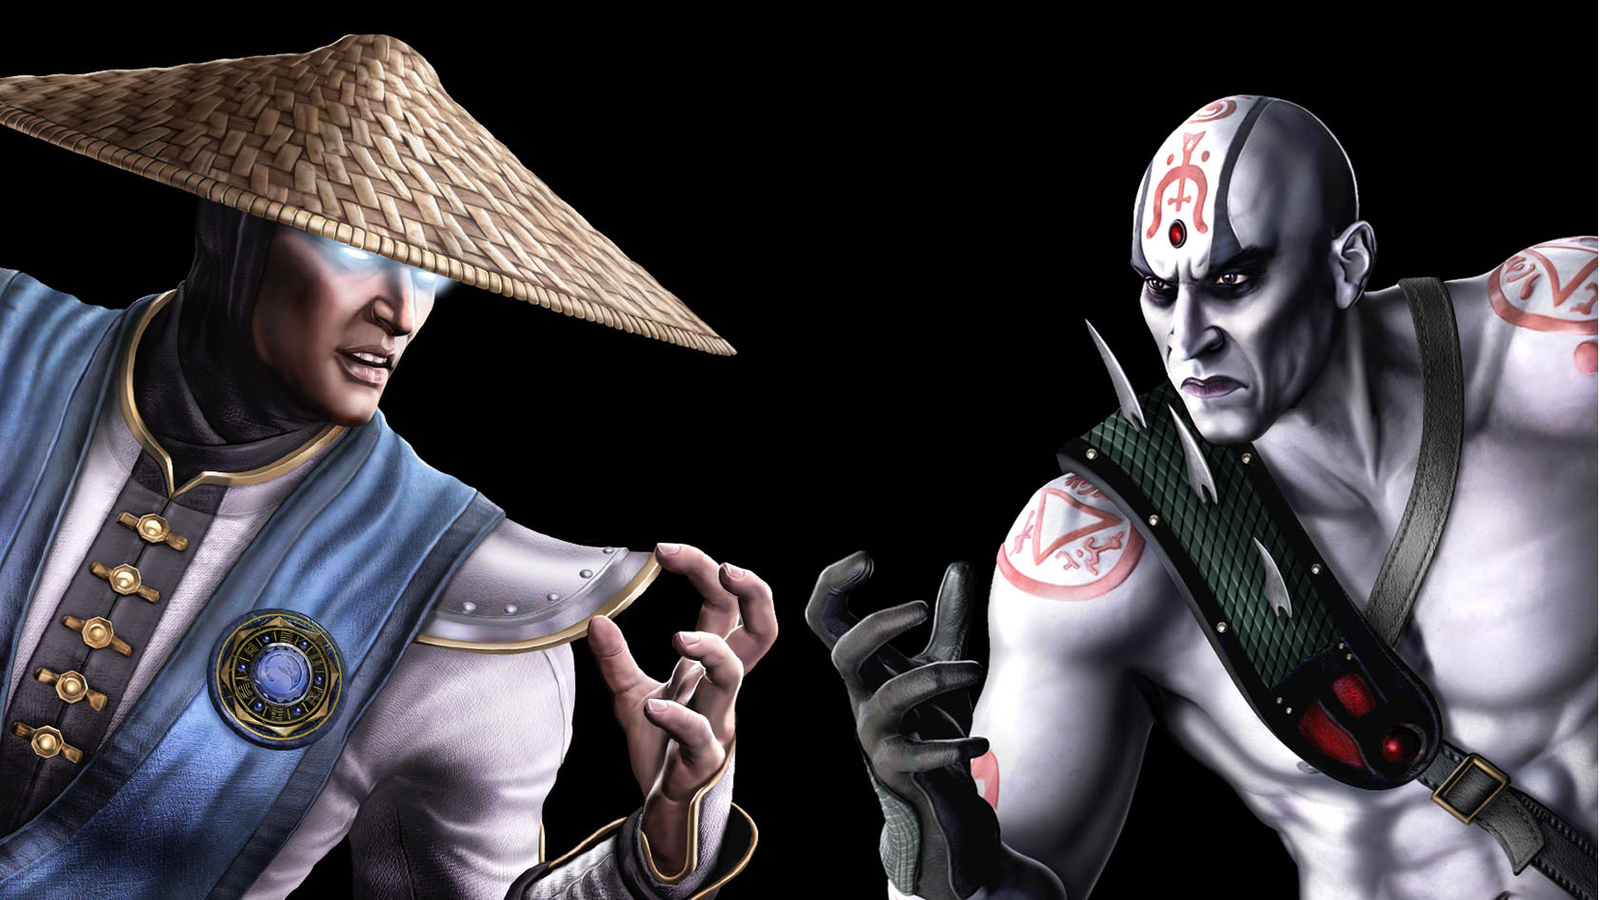 Mortal Kombat Raiden VS Quan Chi Wallpaper